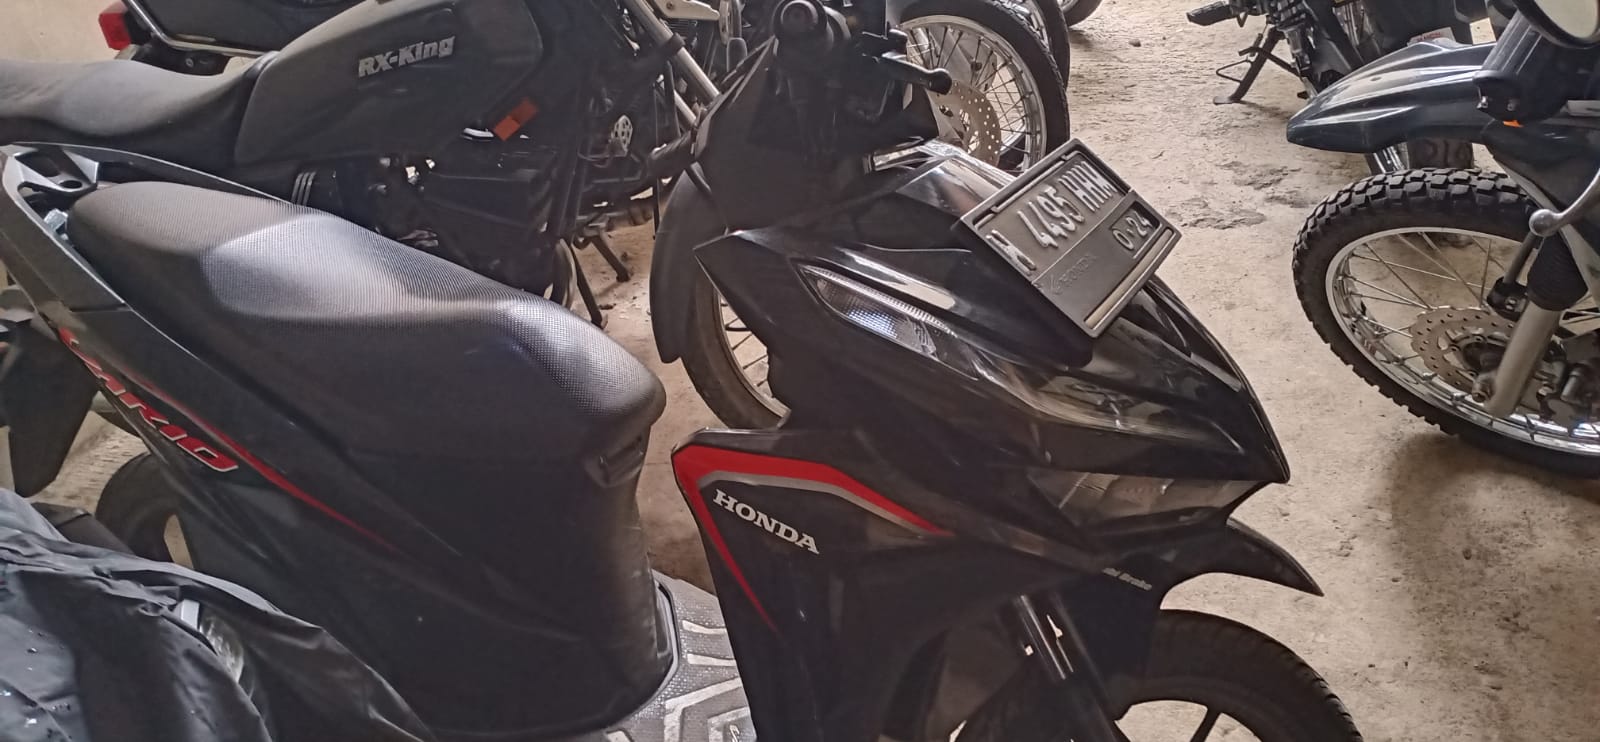 Sepeda motor Honda Vario yang hendak dicuri tersangka